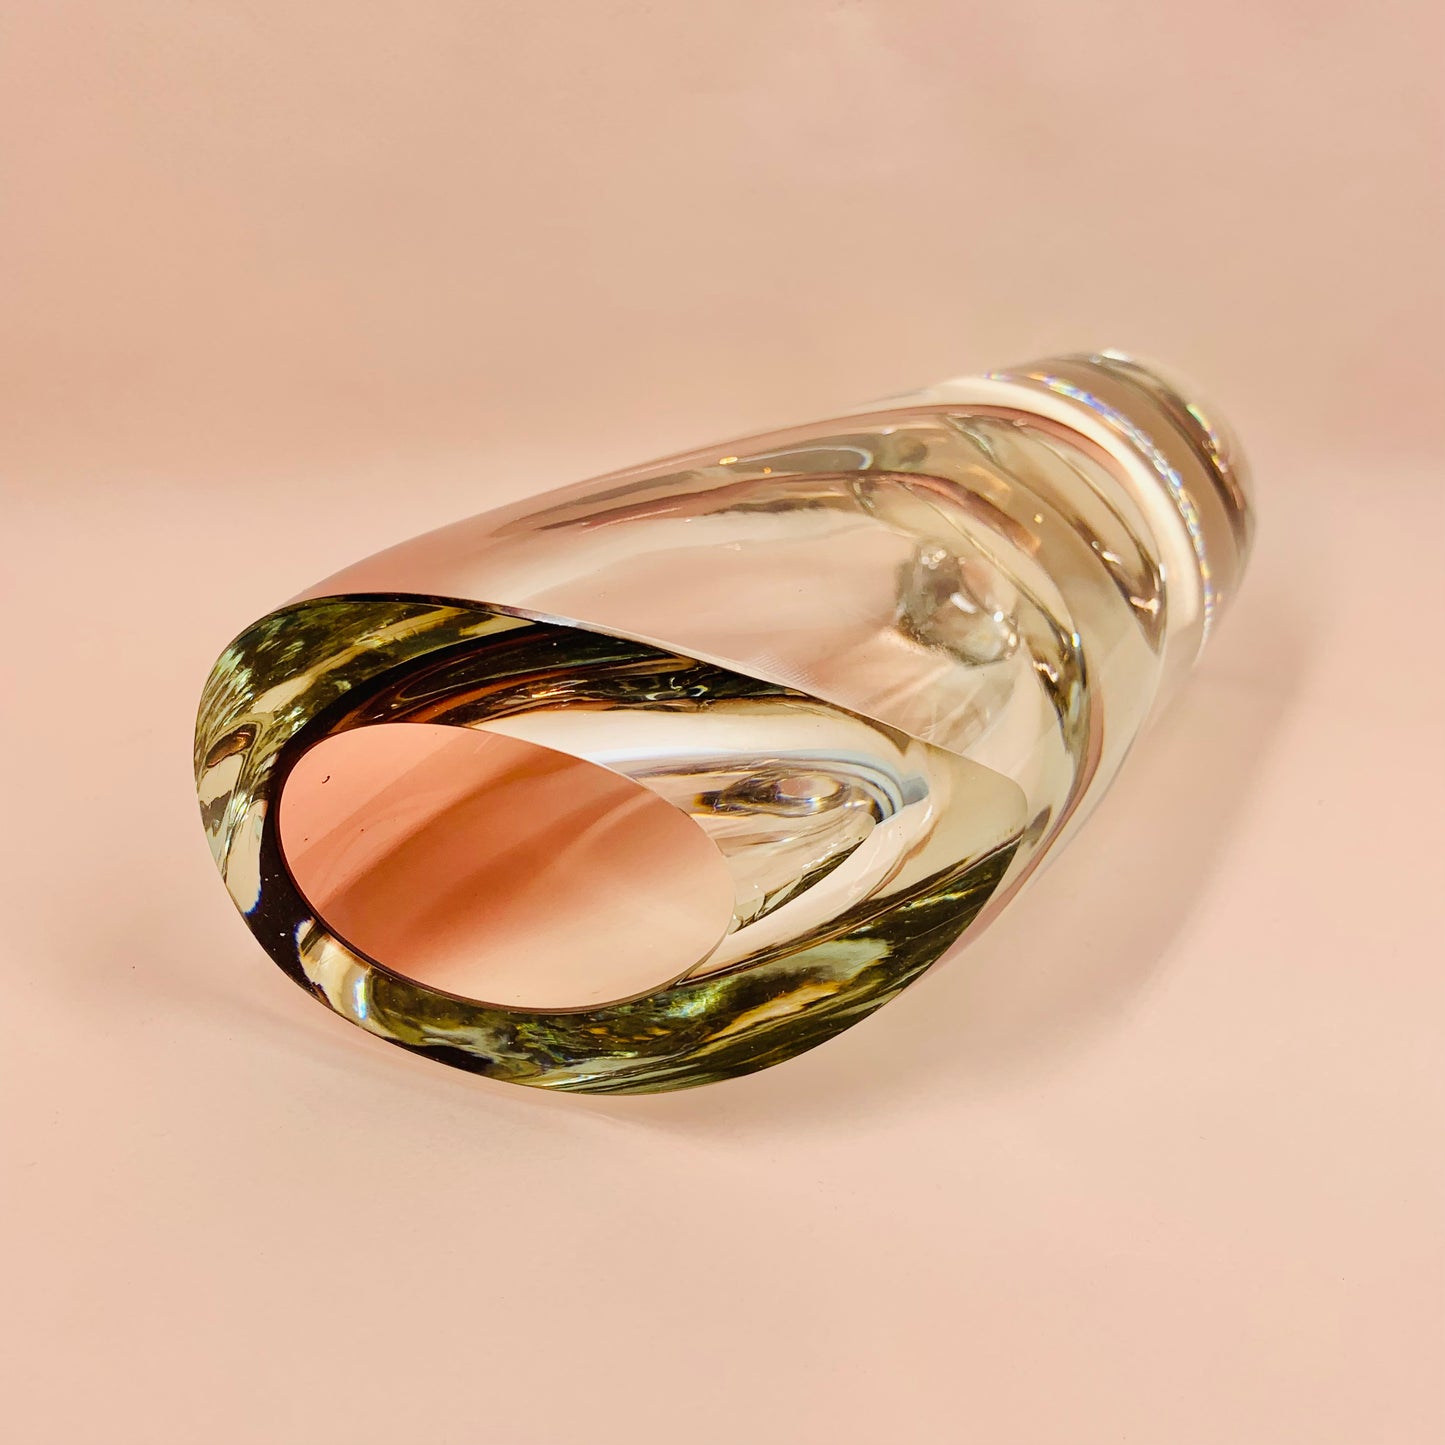 Extremely rare early MCM example of Swedish Saraband glass vase